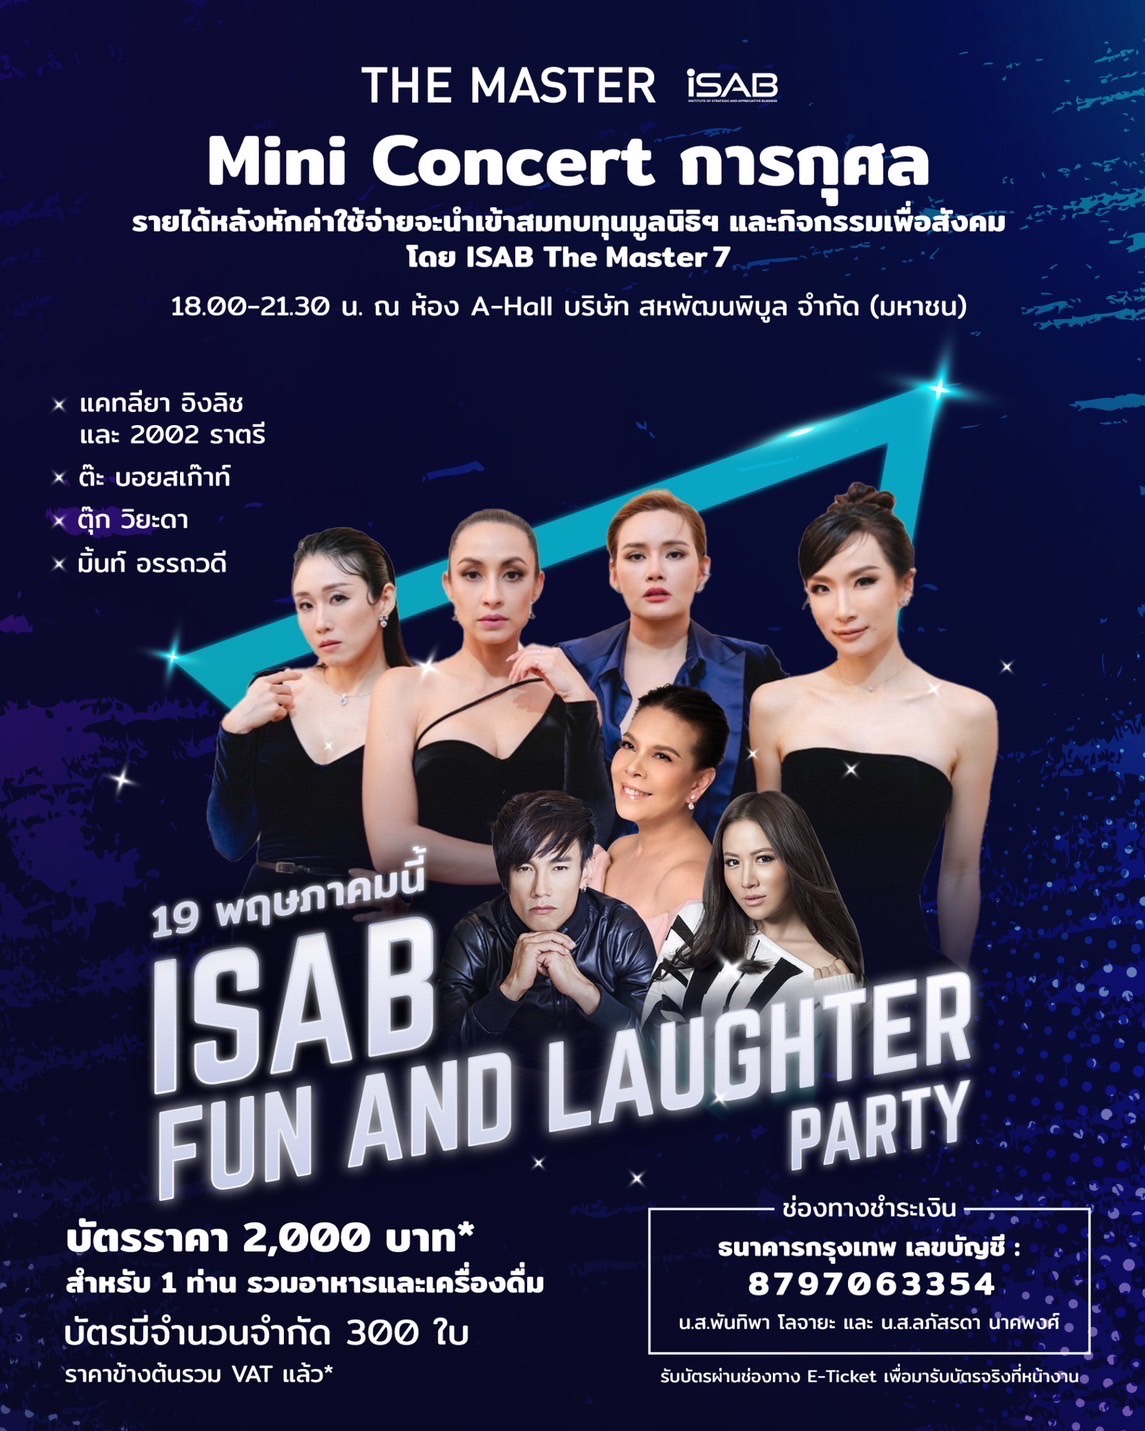 สถาบัน i-SAB โดย The Master 7 สหพัฒนพิบูล จัดมินิคอนเสิร์ตการกุศล ครั้งแรก 1st Concert i-SAB Fun and laughter Party ศุกร์ที่19